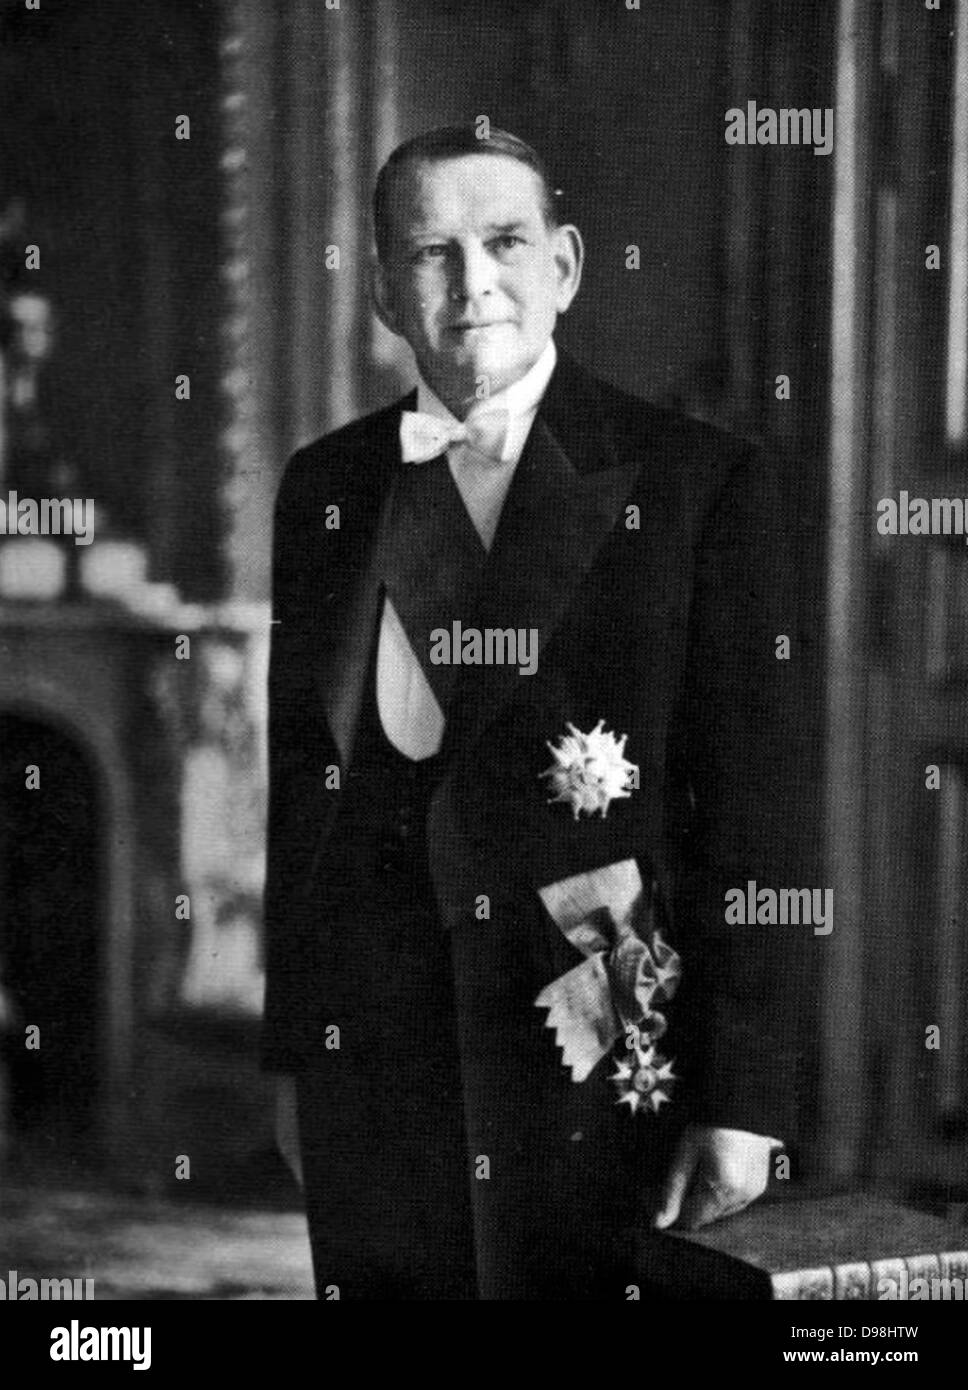 René Jules Gustave Coty 1882 - 1962) war Präsident von Frankreich von 1954 bis 1959. Er war der zweite und letzte Präsident unter der französischen Vierten Republik. Stockfoto